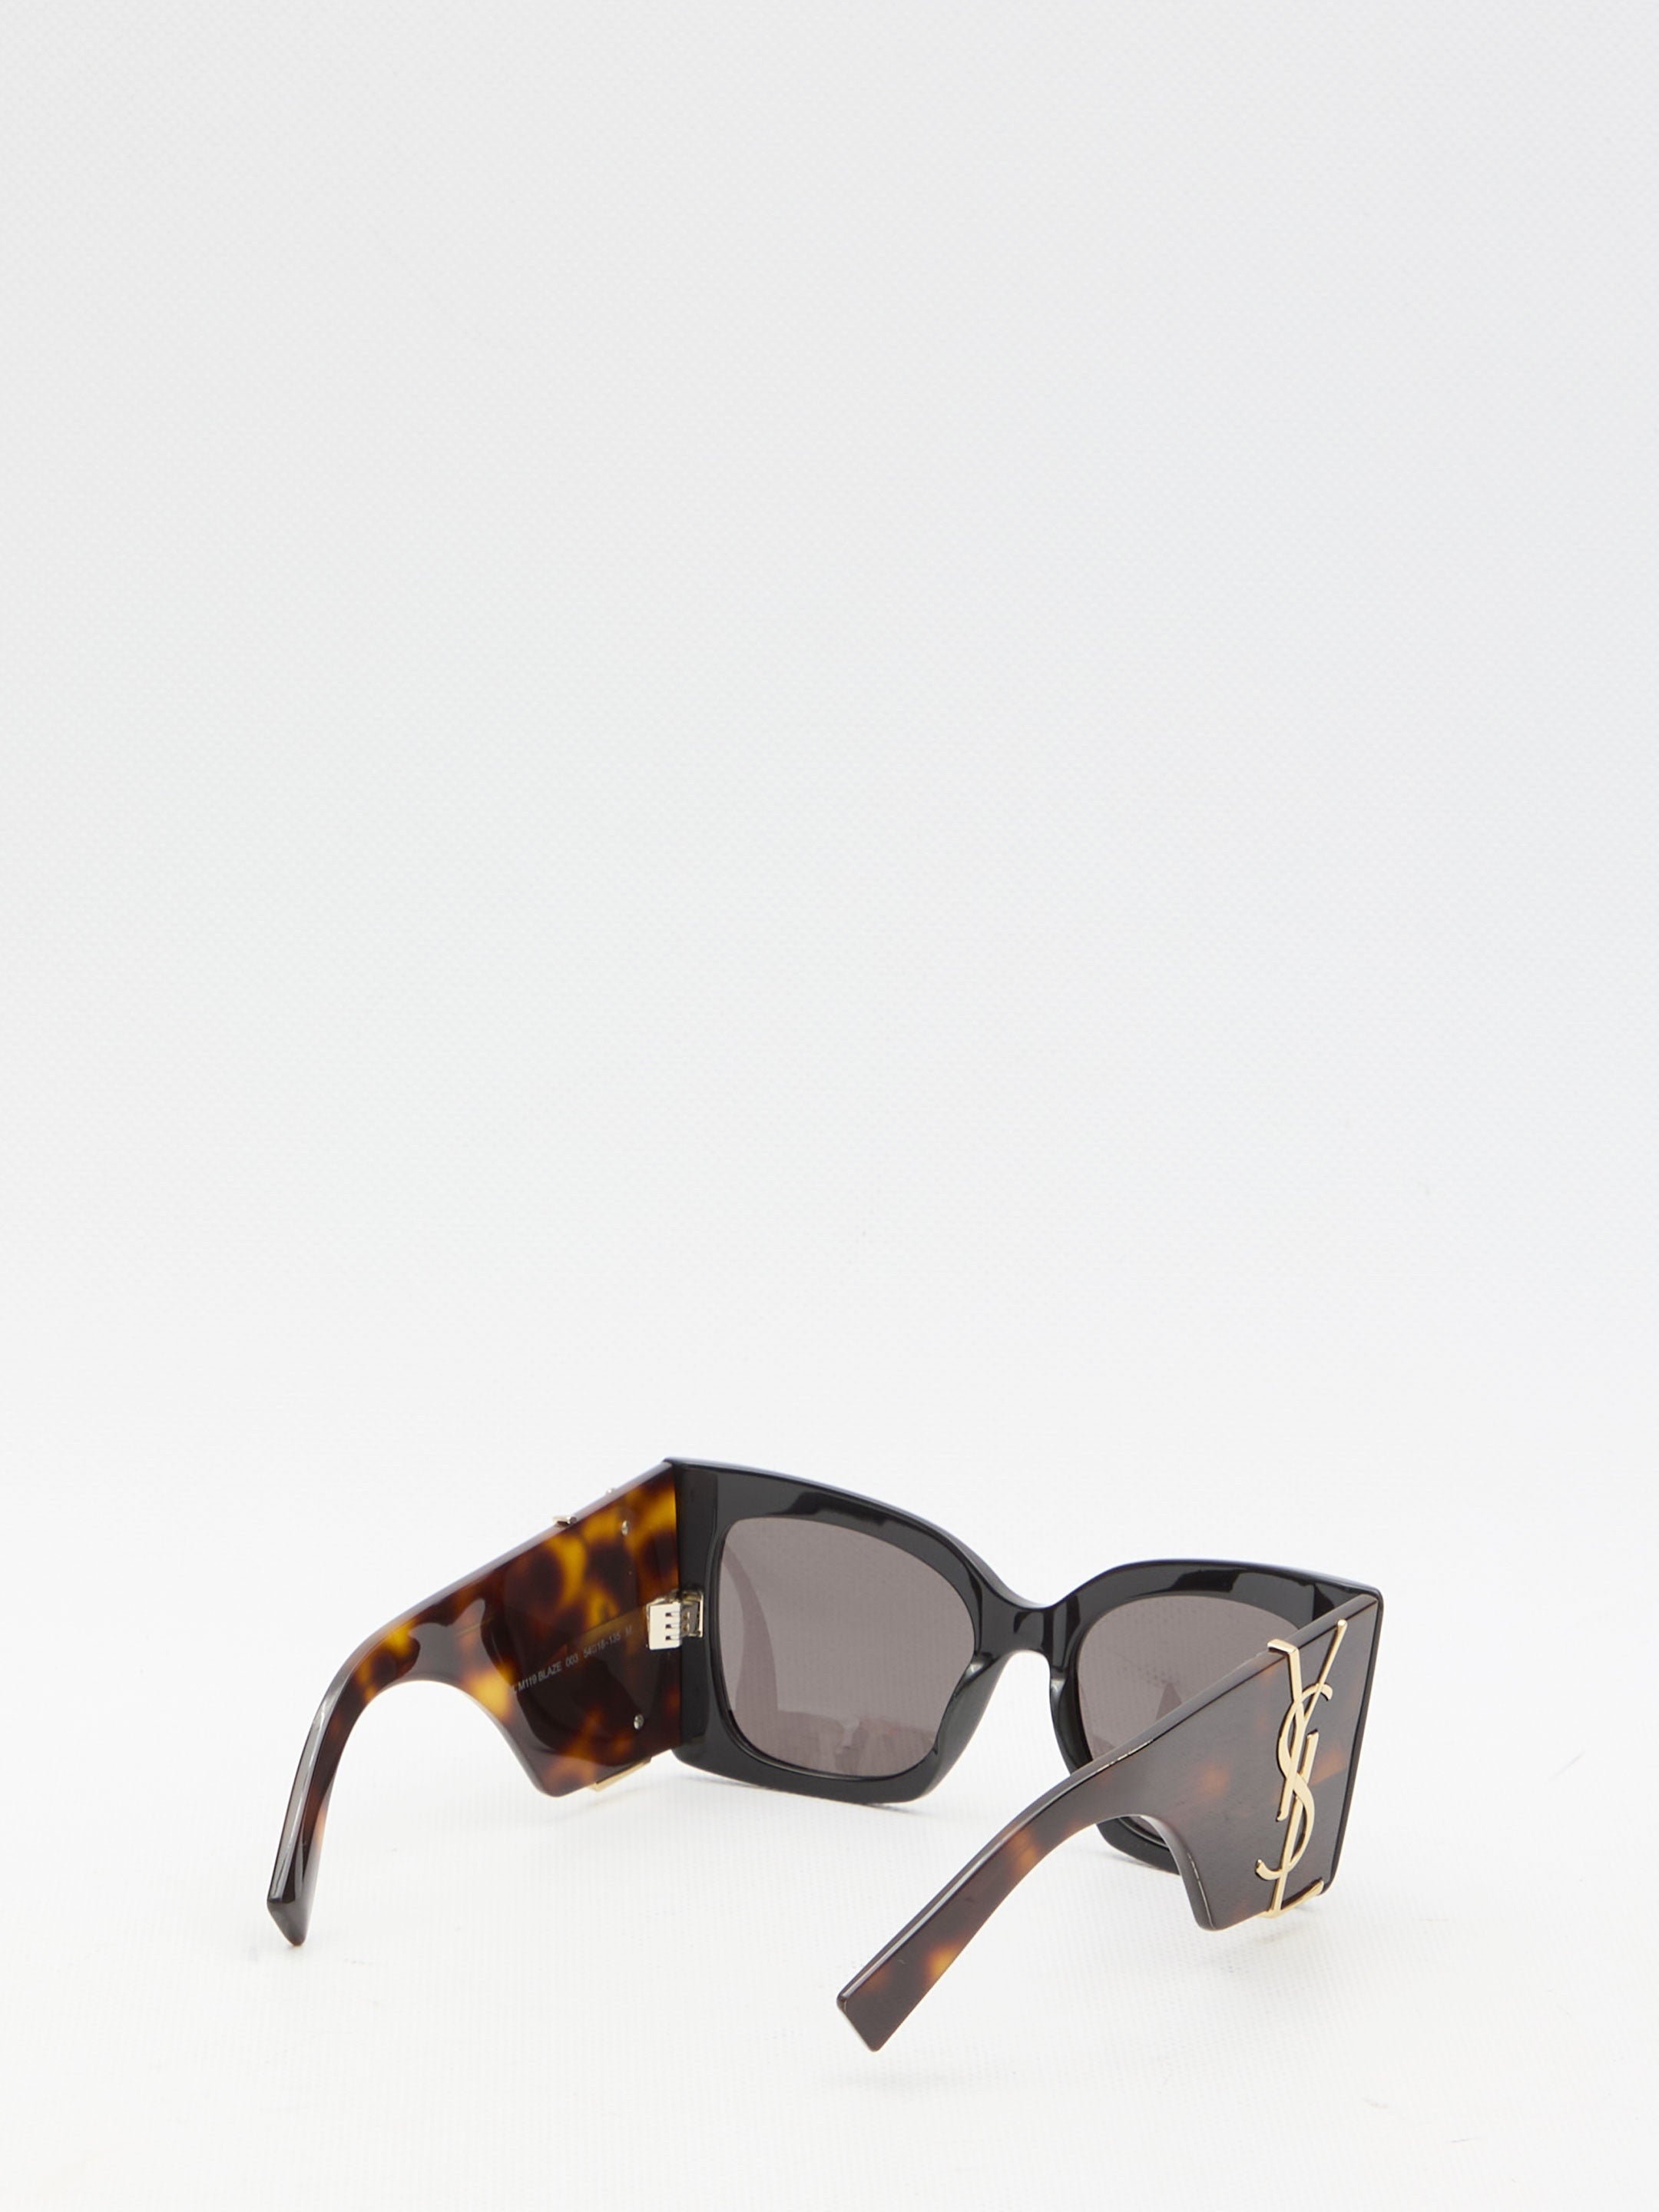 SL M119 Blaze sunglasses